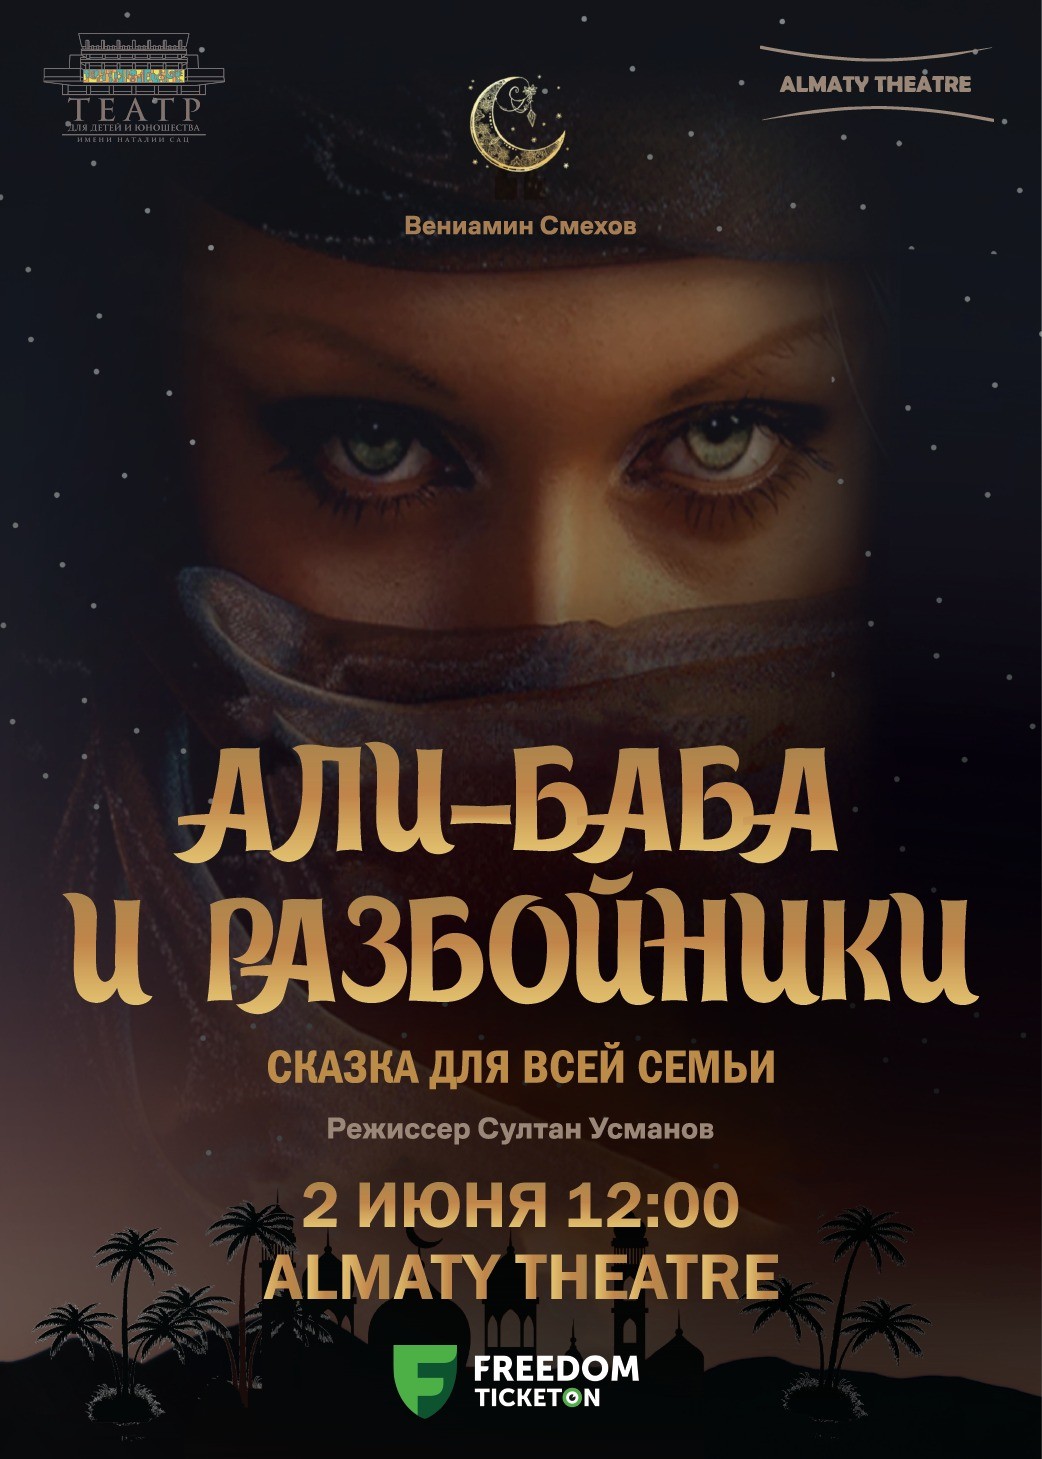 Әли - баба және Almaty театрындағы қарақшылар